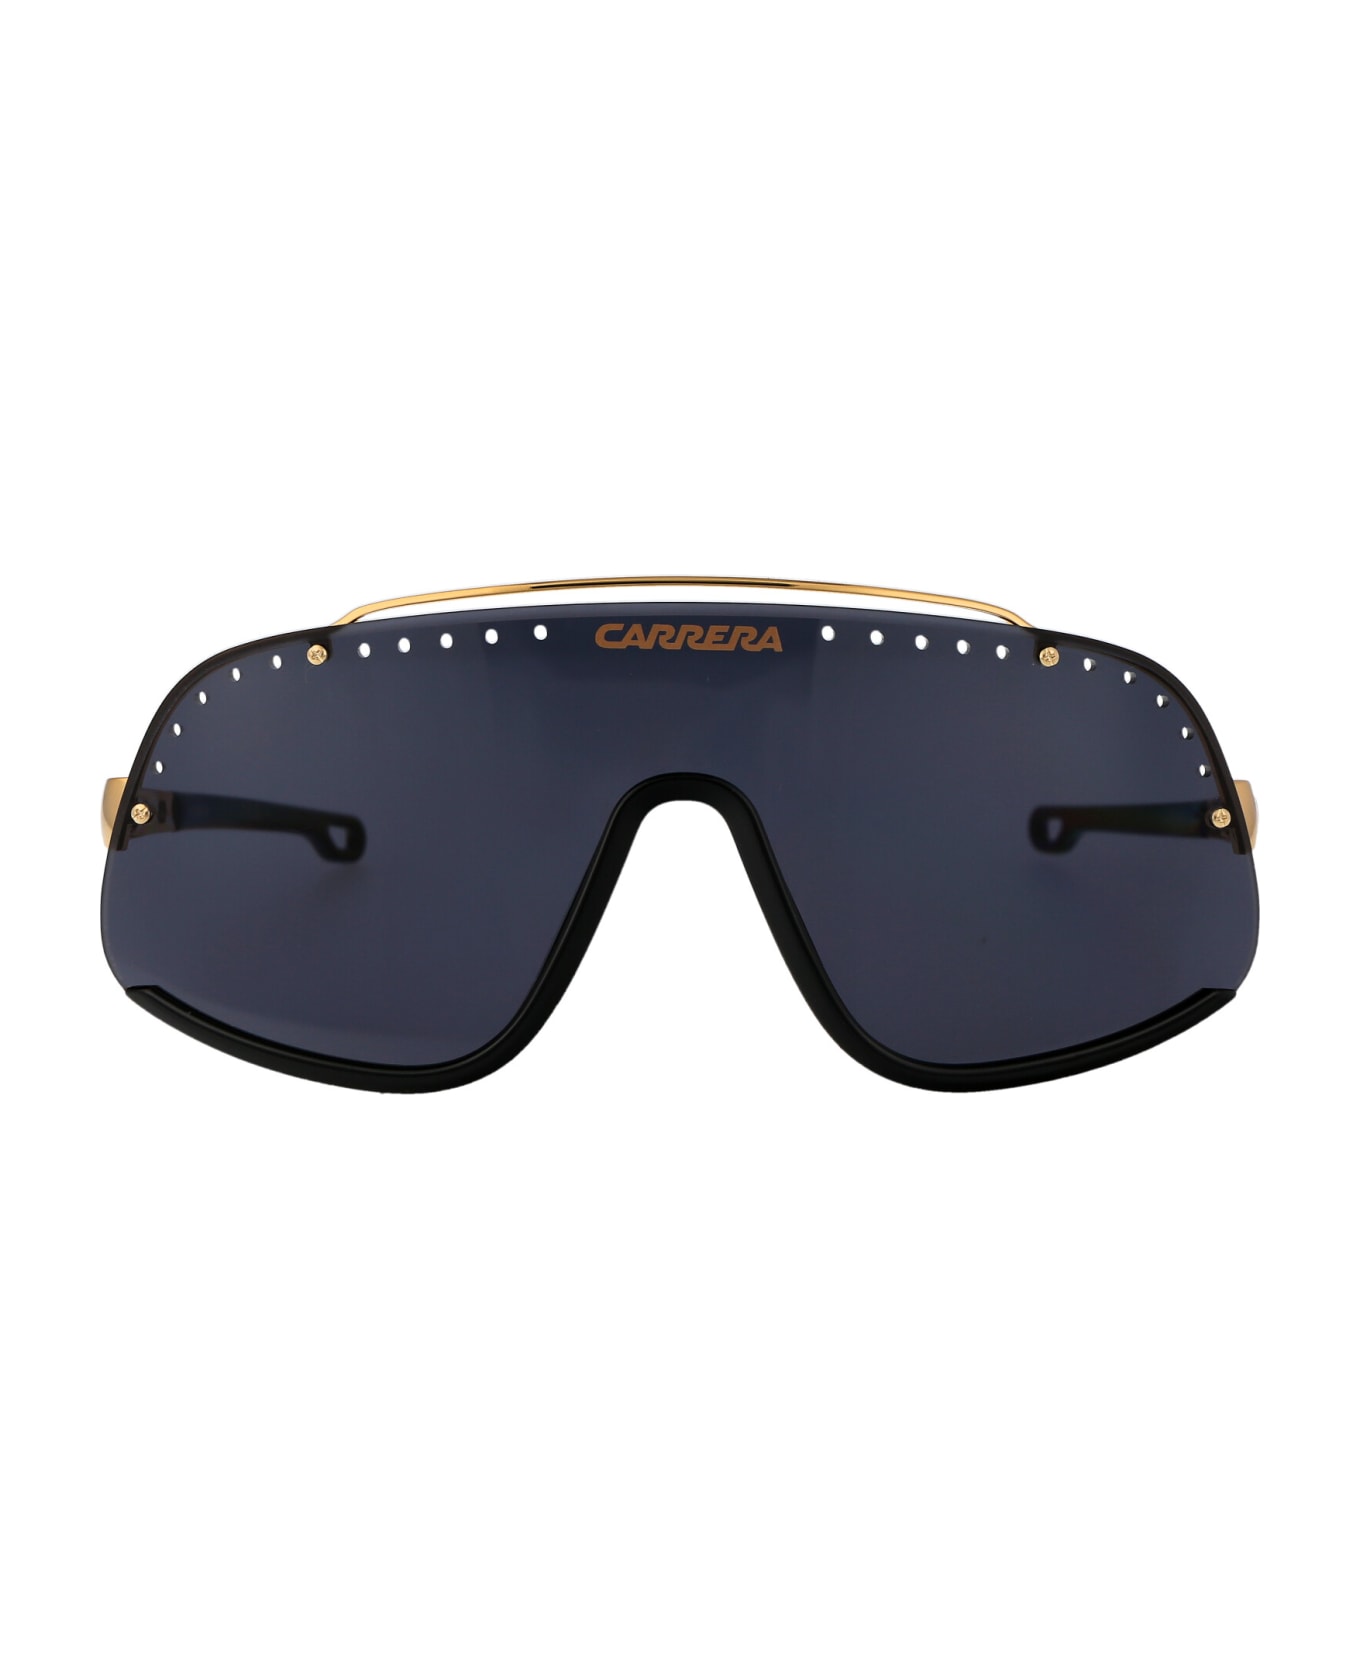 Carrera Flaglab 16 Sunglasses - 2M22K BLK GOLD B